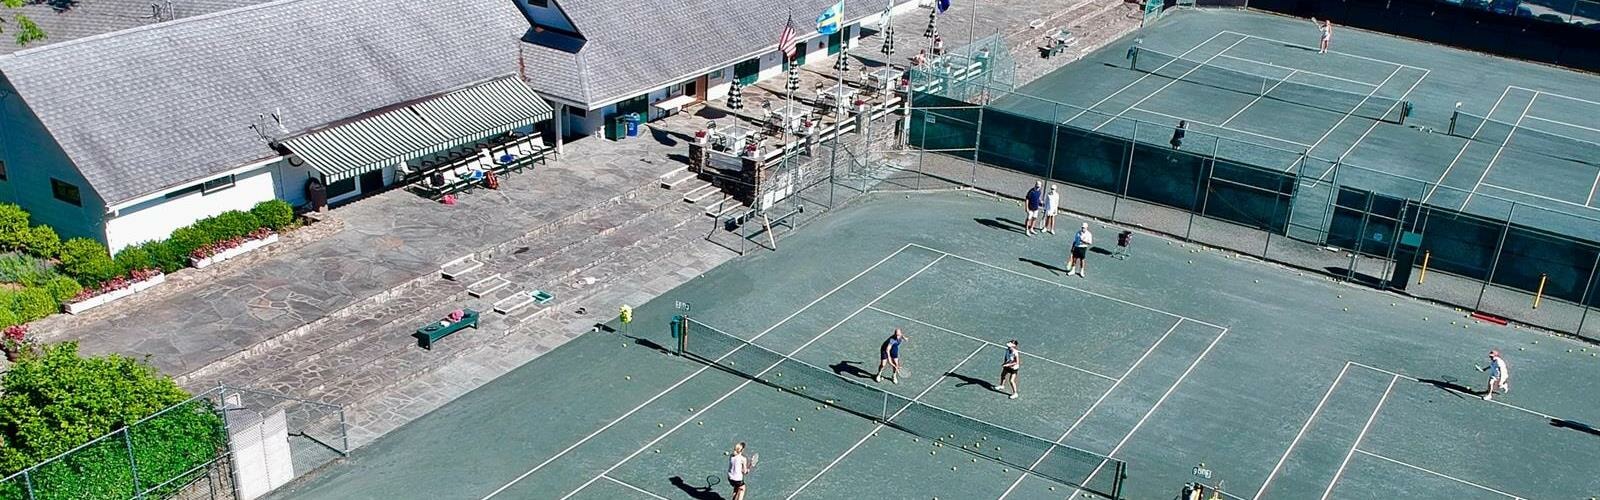 TennisDetailPageBanner_Tennis_Courts_Good